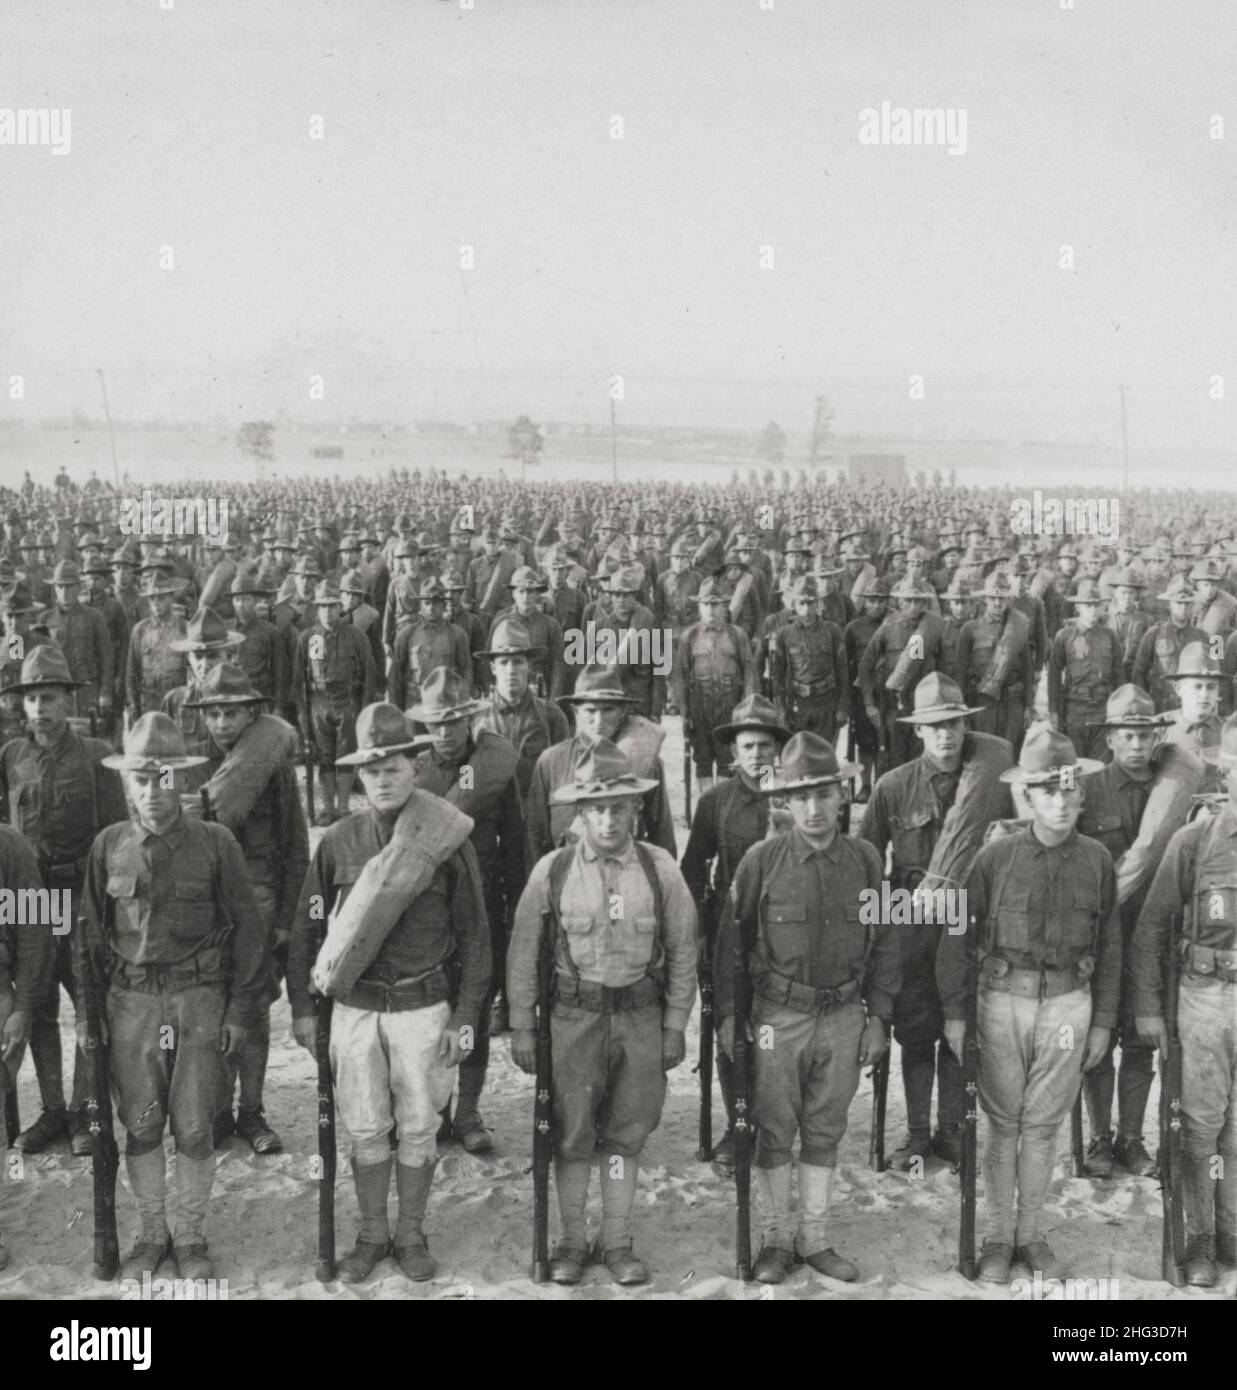 Photo d'époque de la première Guerre mondiale 1914-1918.Réponse américaine au Kaiser, 3 000 des millions d'Américains désireux de lutter pour la démocratie. Banque D'Images